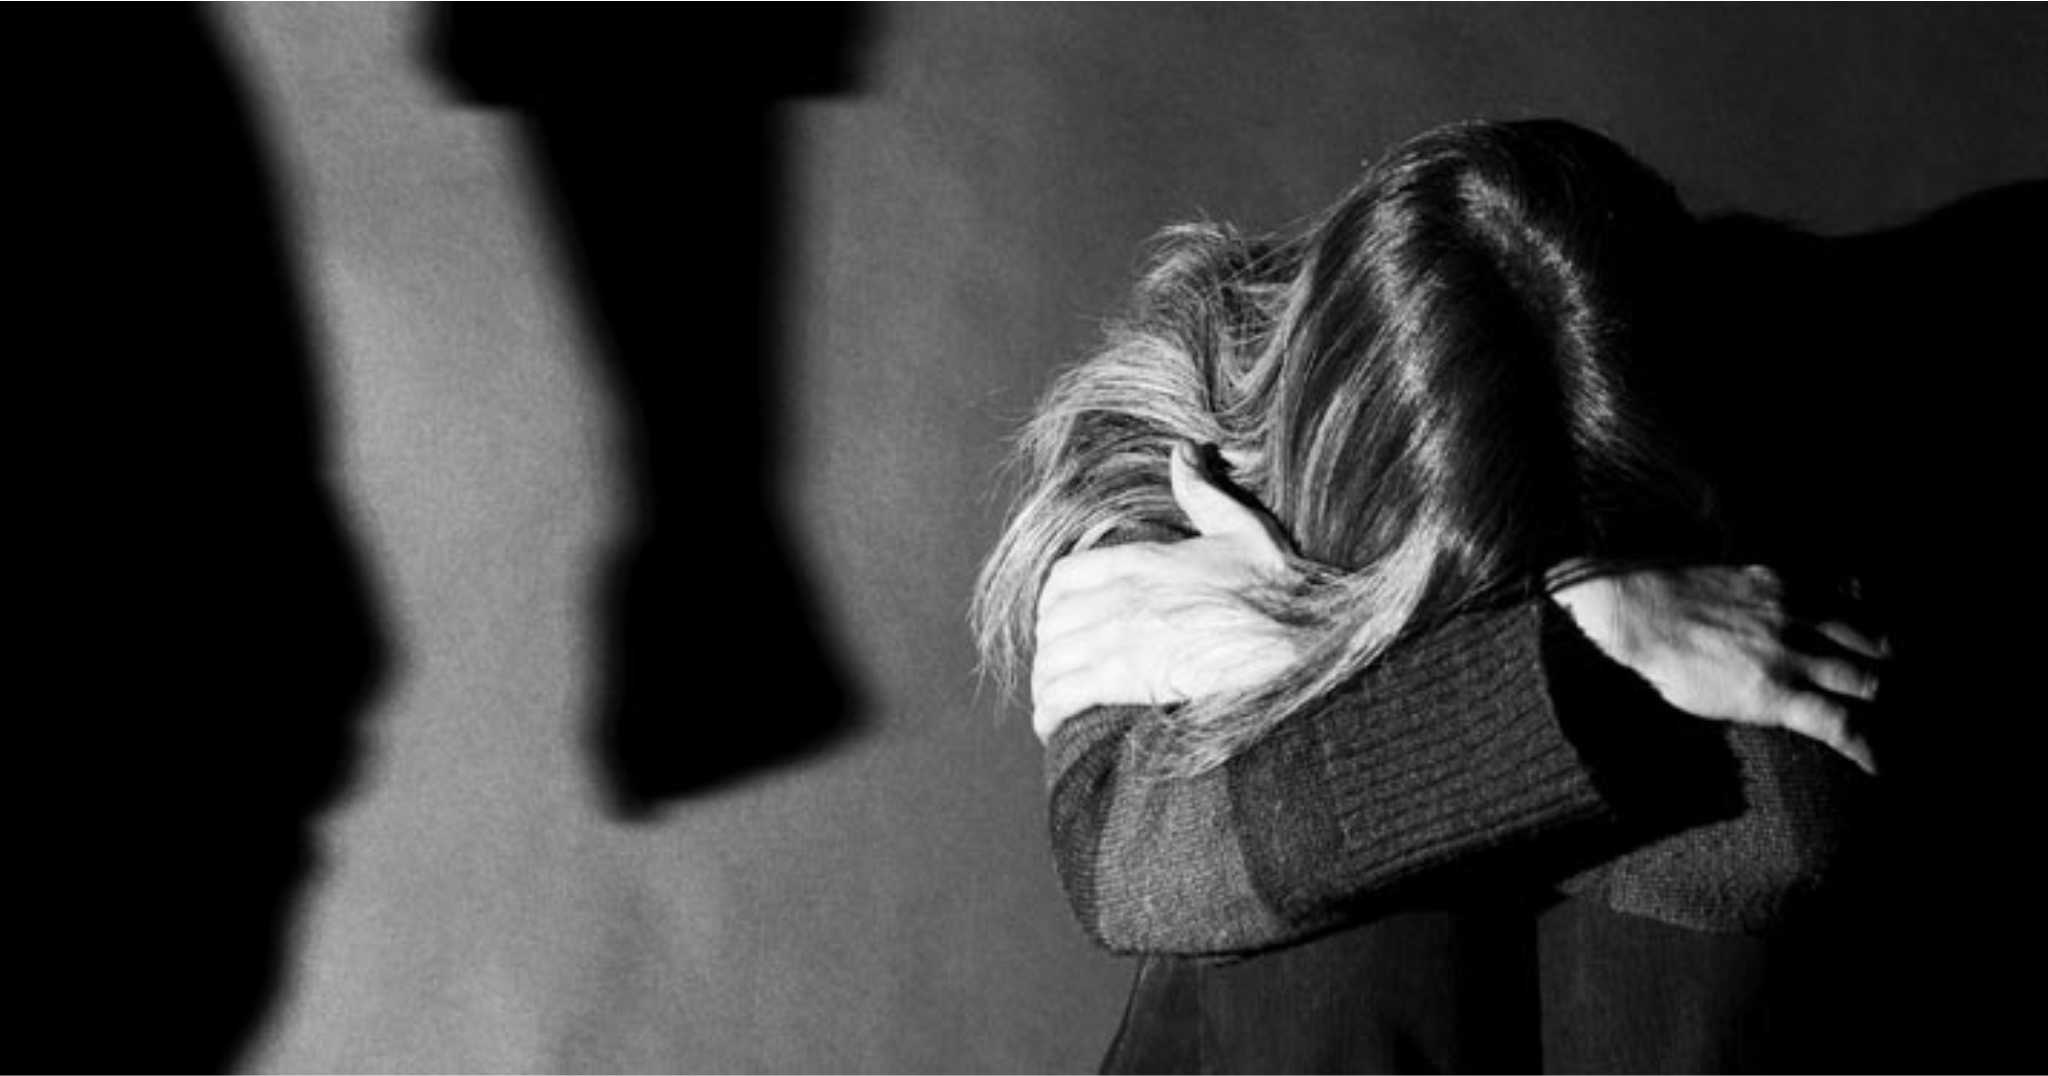 Πάτρα: Θύμα ενδοοικογενειακής βίας έπεσε μητέρα έξι παιδιών – Αναζητείται ο σύντροφός της